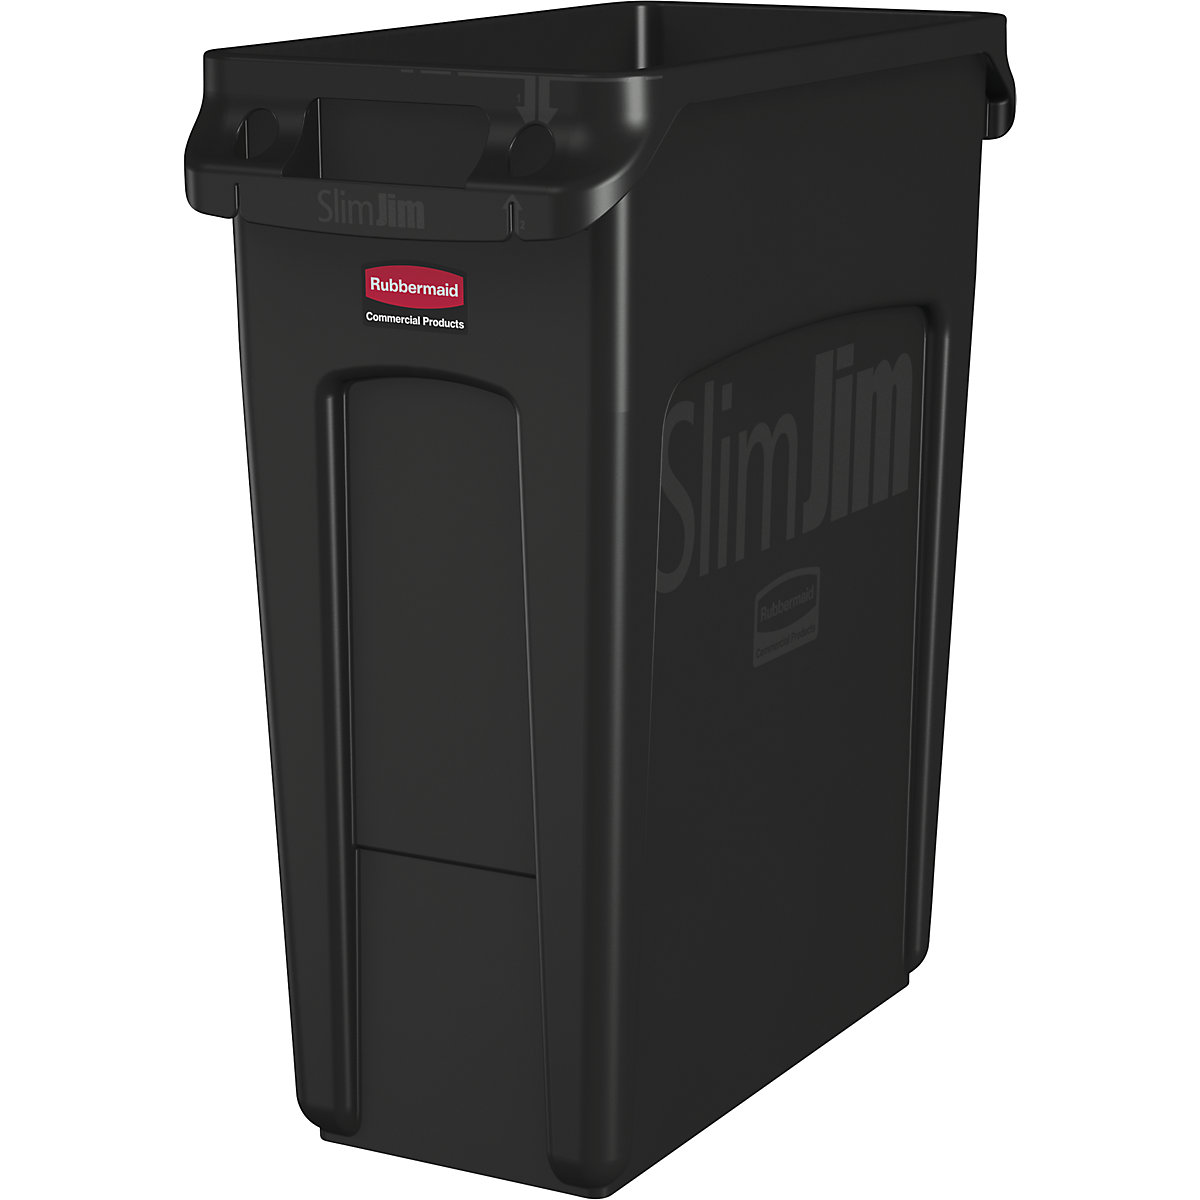 Nádoba na tříděný odpad/odpadkový koš SLIM JIM&reg; - Rubbermaid